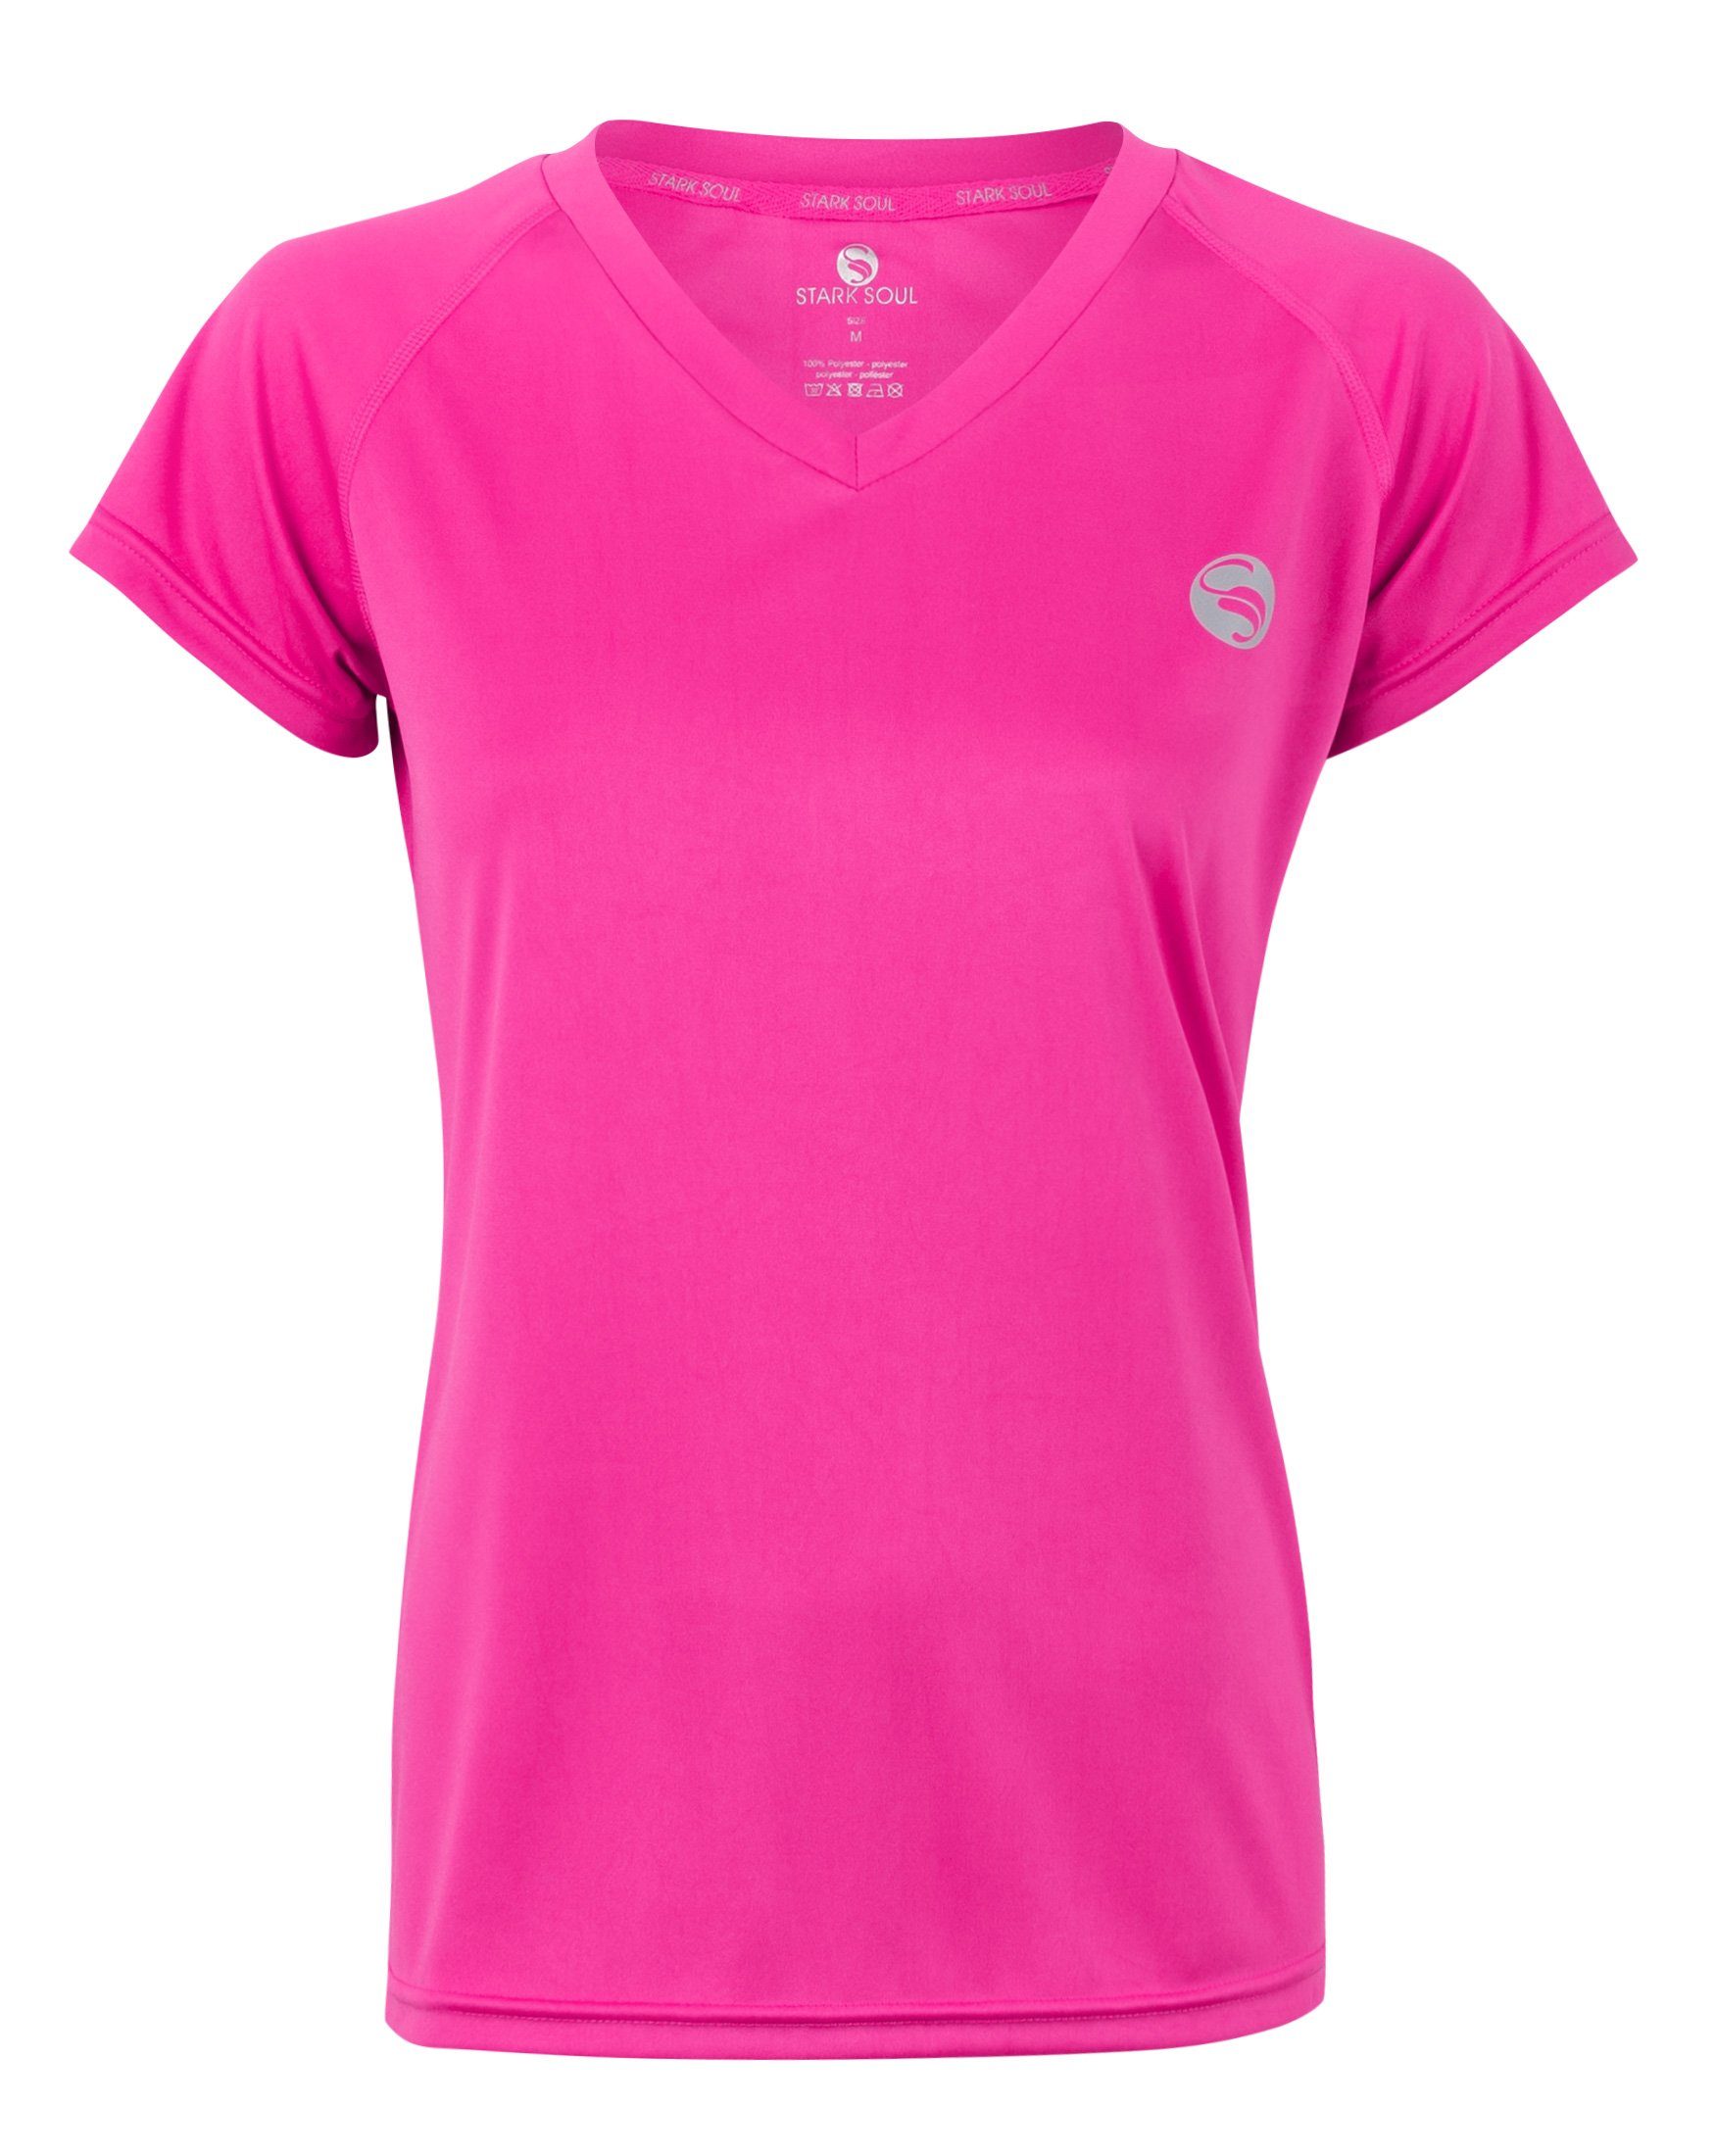 Stark Soul® Sporttop Sport Shirt aus Quick Dry Material - Schnelltrocknend Pink